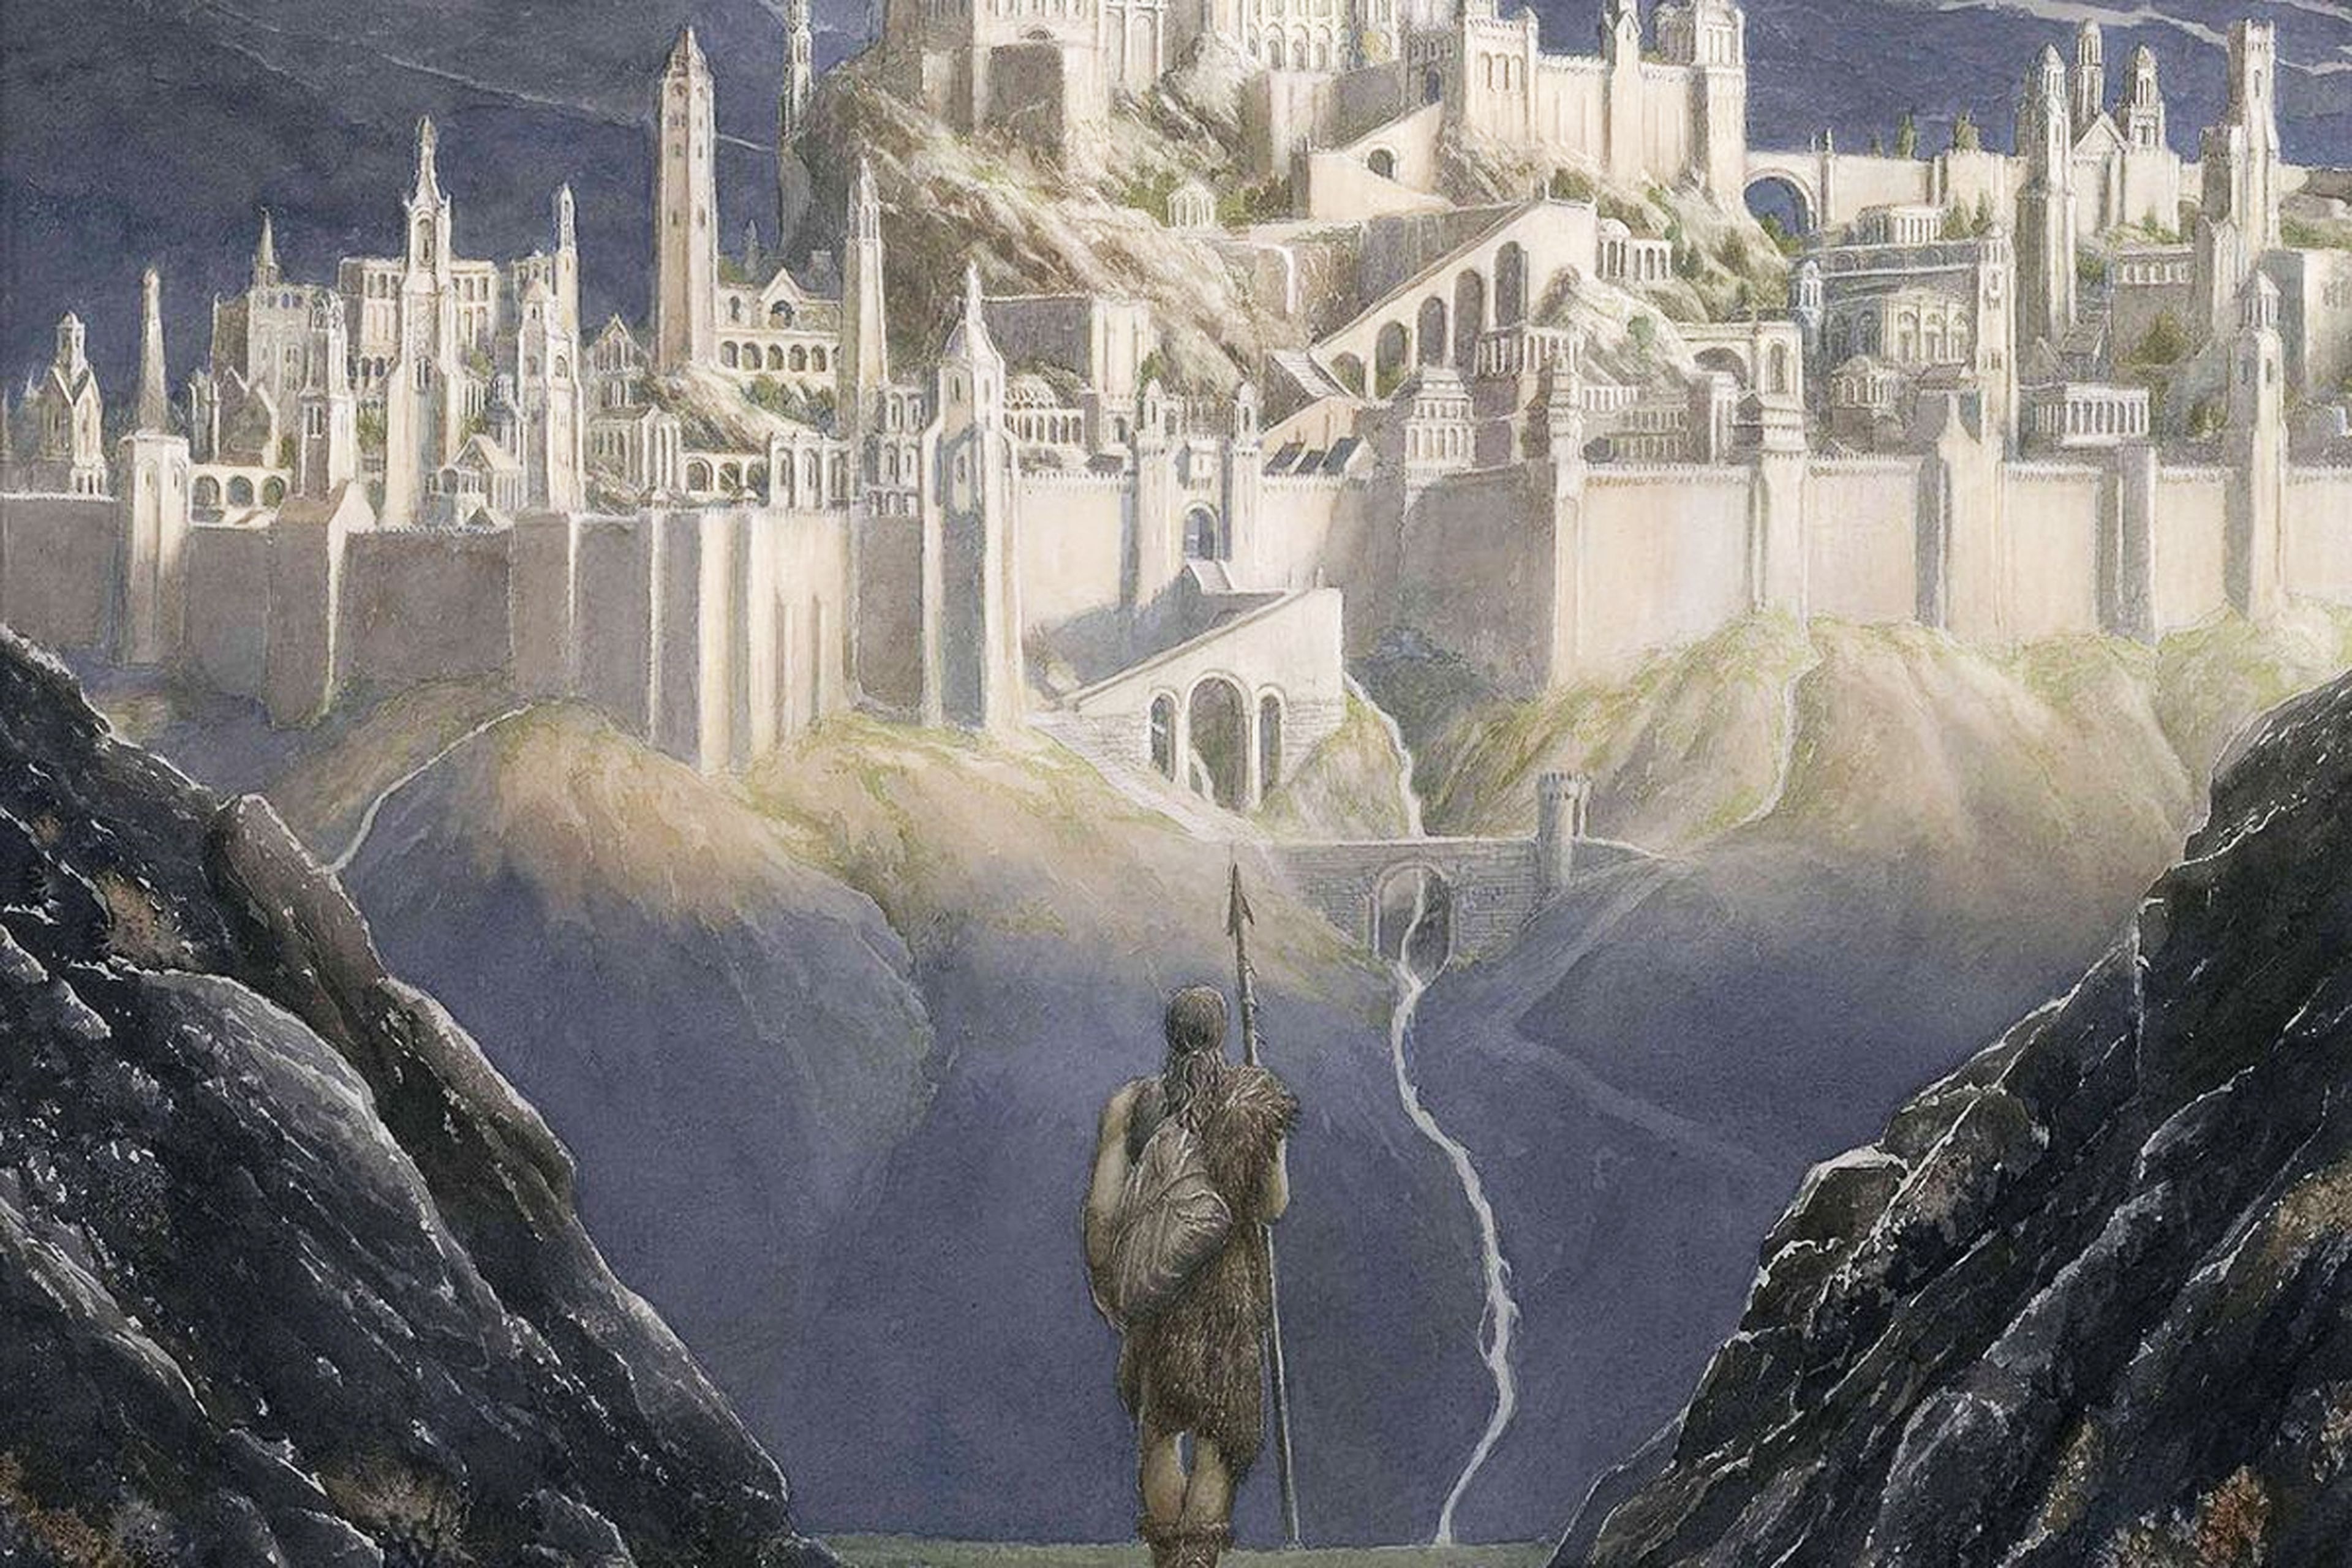 La Caída de Gondolin